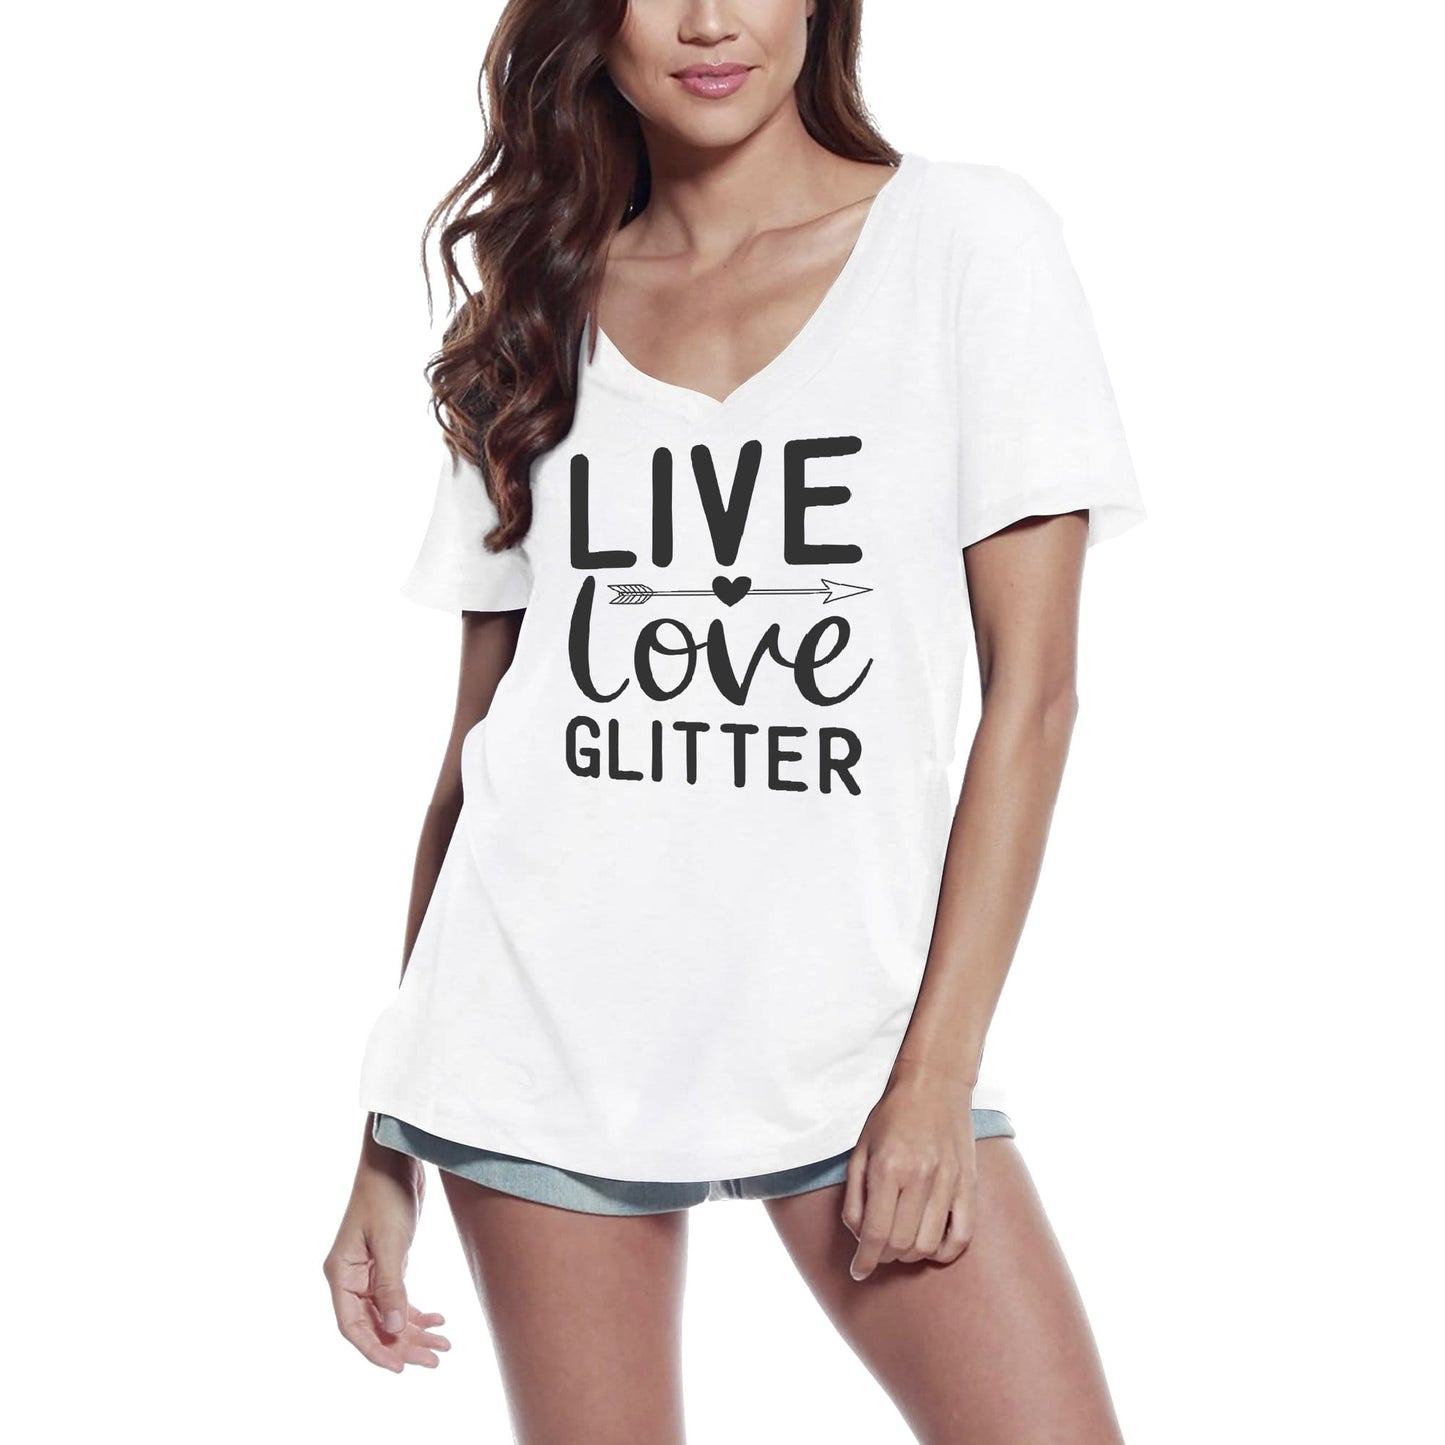 ULTRABASIC Women's T-Shirt Live Love Glitter - Short Sleeve Tee Shirt Tops